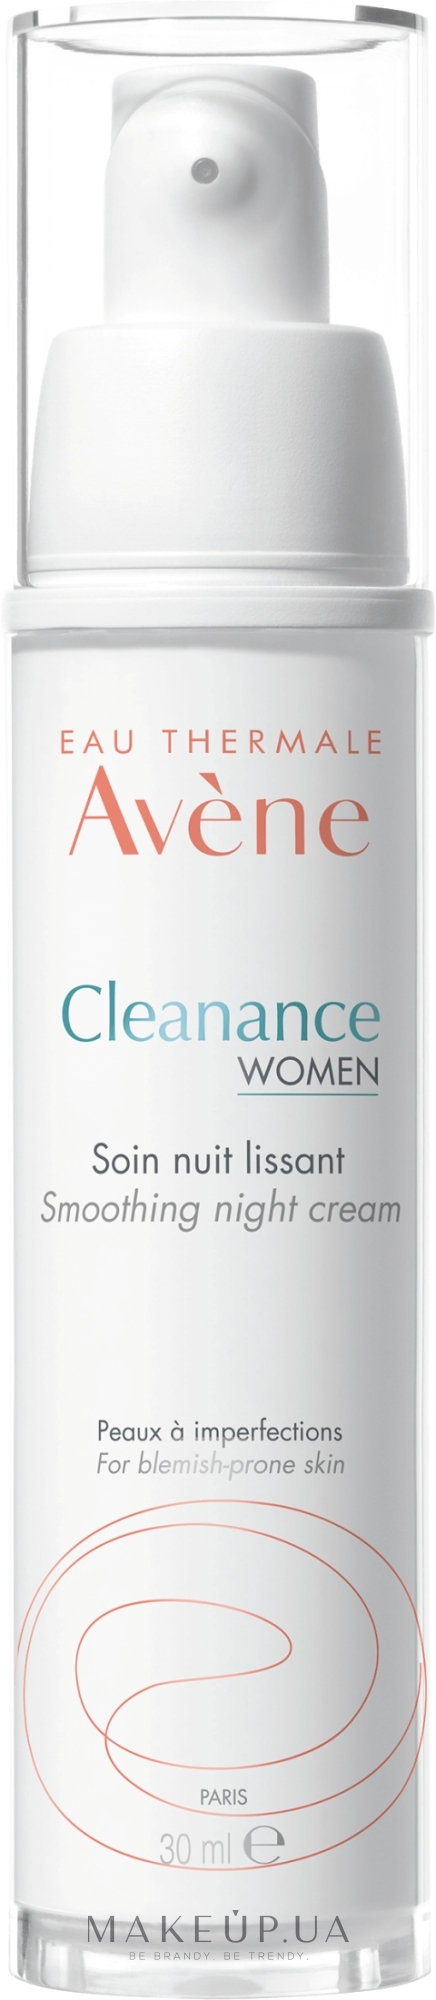 Avene Cleanance Women Soin Nuit Lissant 30ml